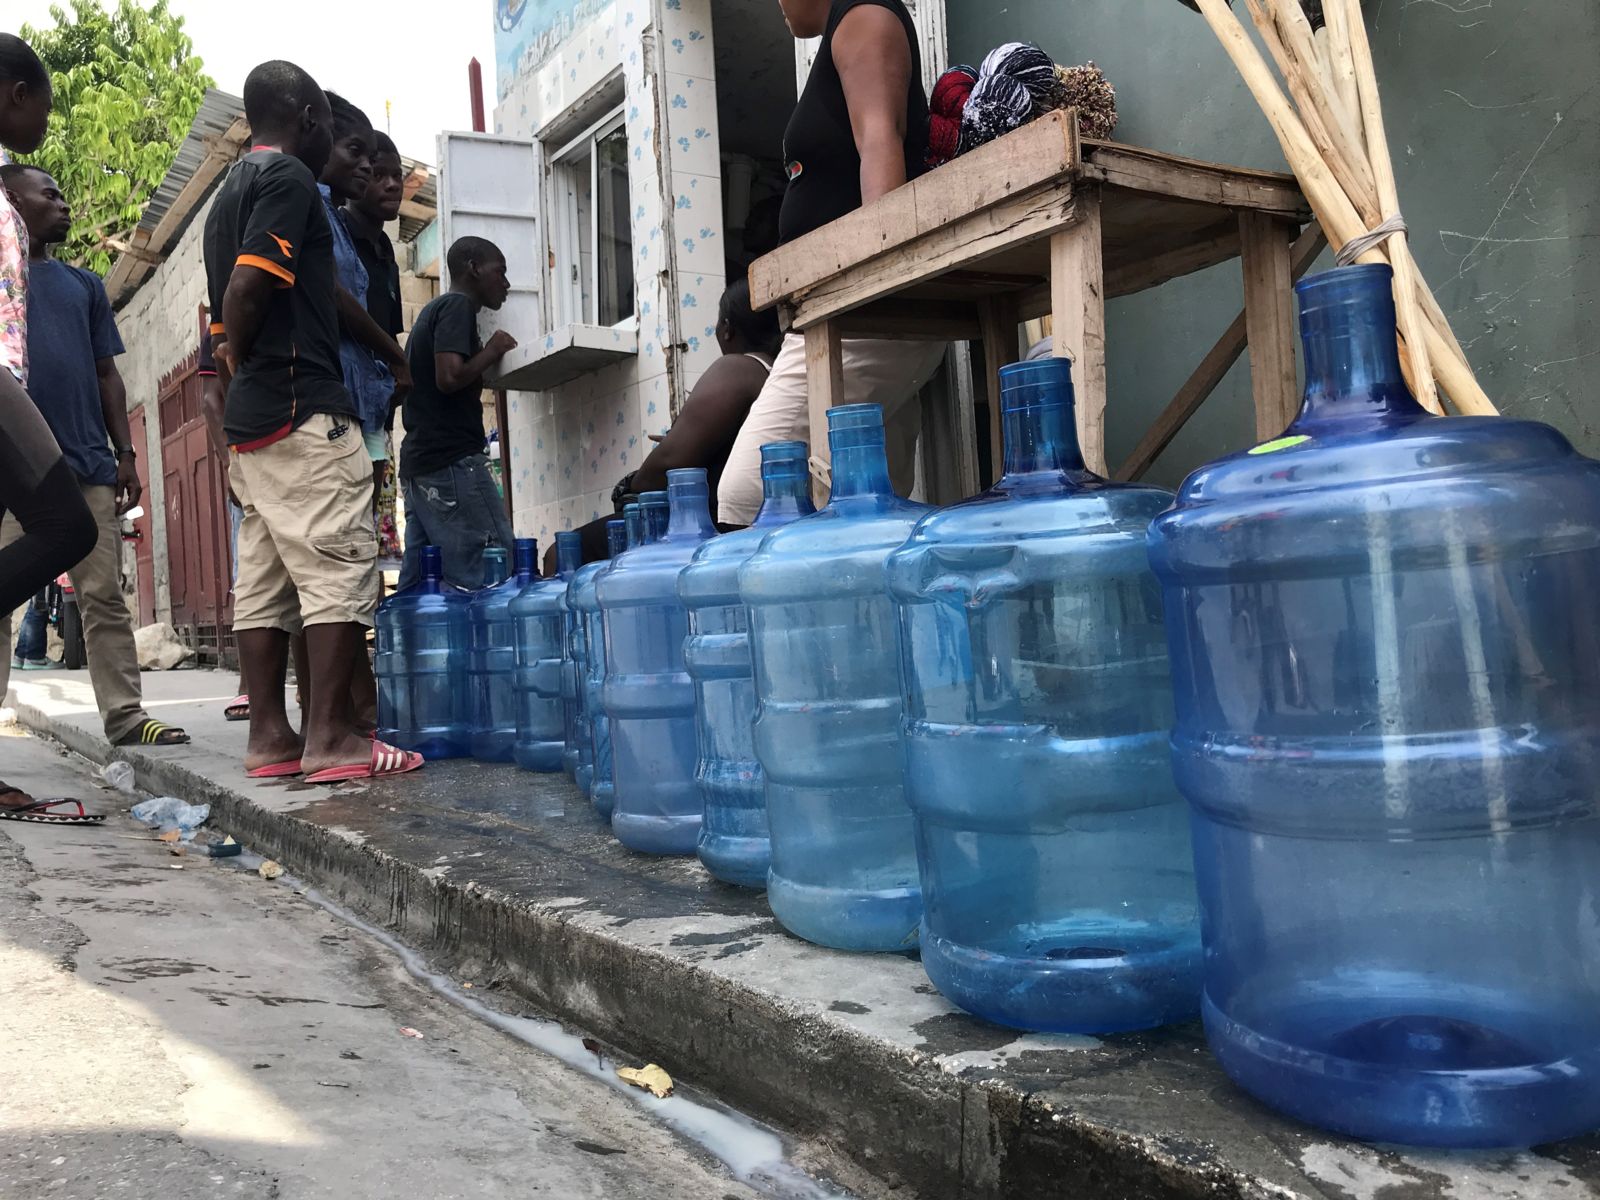 Pourquoi une réponse de l'ONU aux dégâts matériels et humains causés par le choléra qu’elle a introduit en Haïti, devrait-elle être fondée sur les droits humains dans le contexte de la crise COVID-19 ?